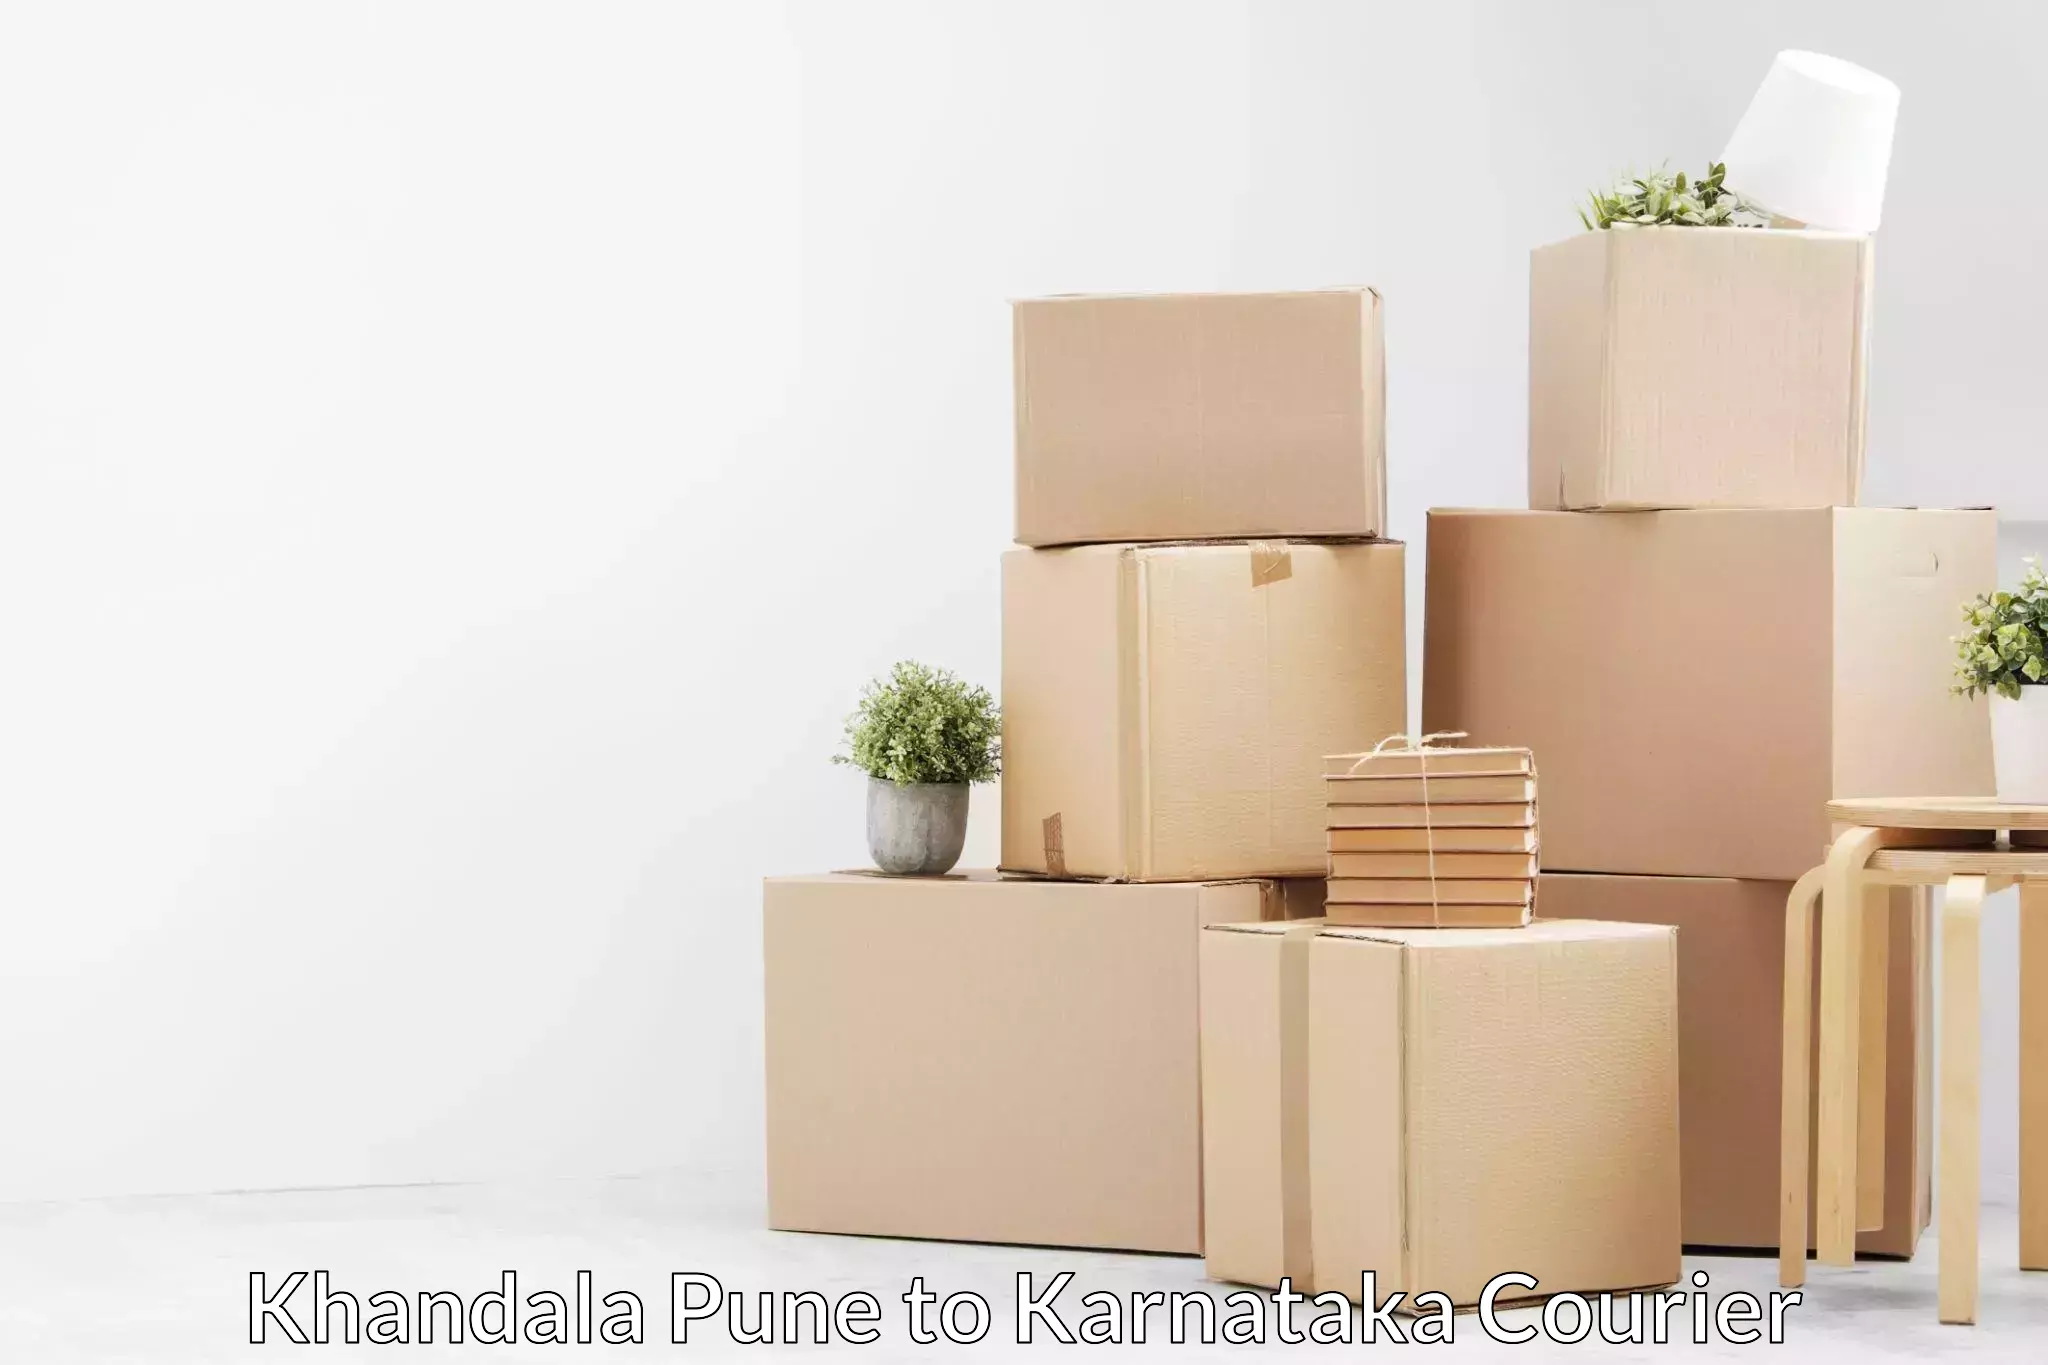 Personalized relocation solutions Khandala Pune to Karnataka